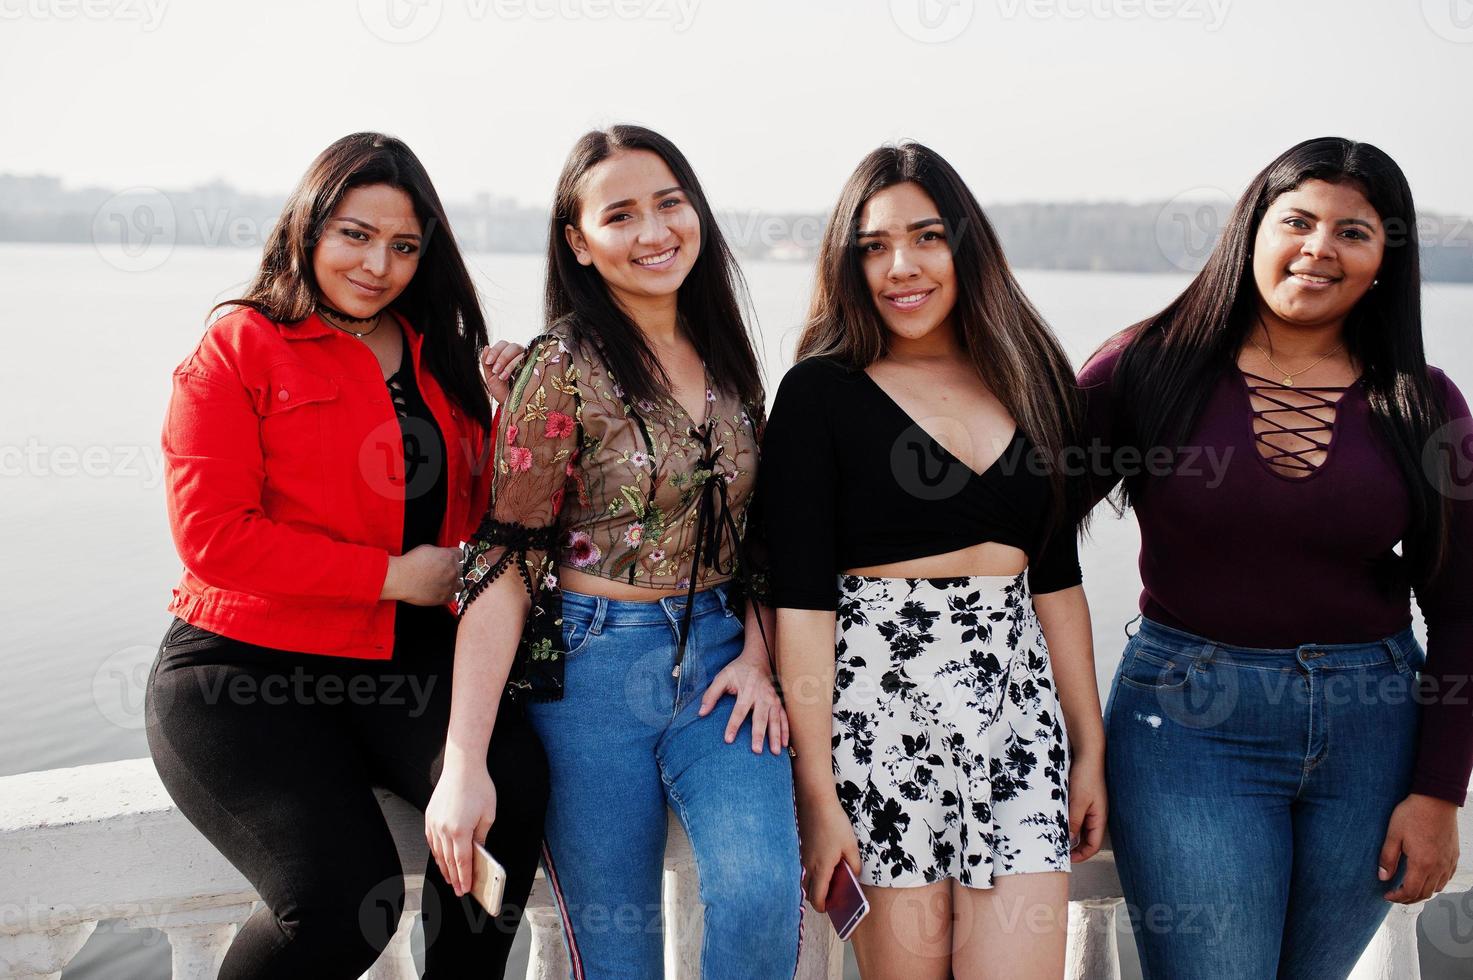 groupe de quatre filles latinos heureuses et jolies de l'équateur posées contre le bord du lac. photo